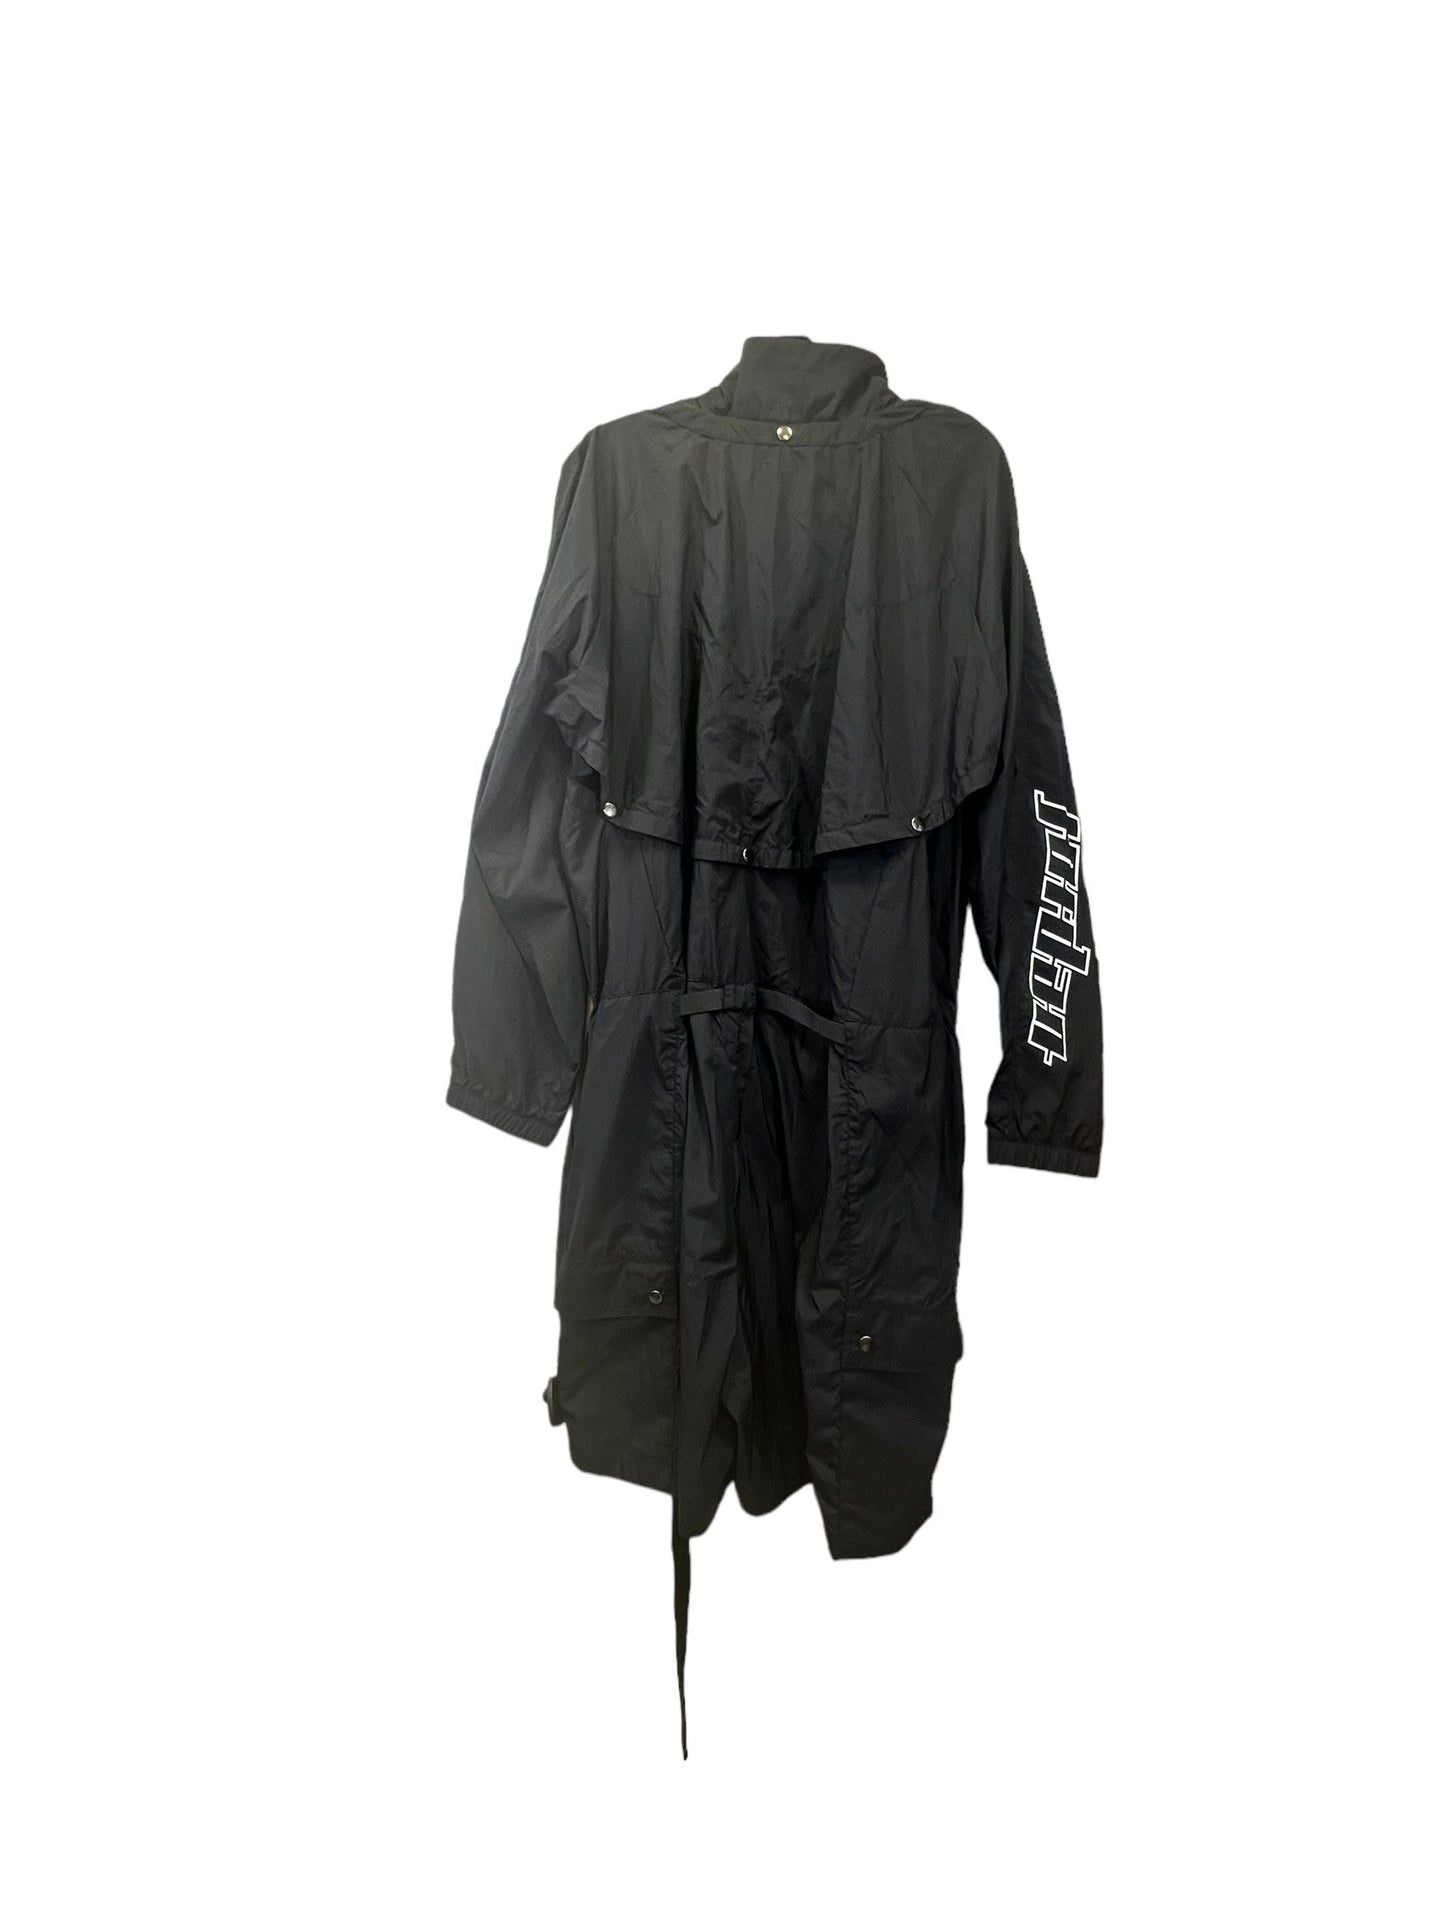 Black Jacket Other Jordan, Size 1x